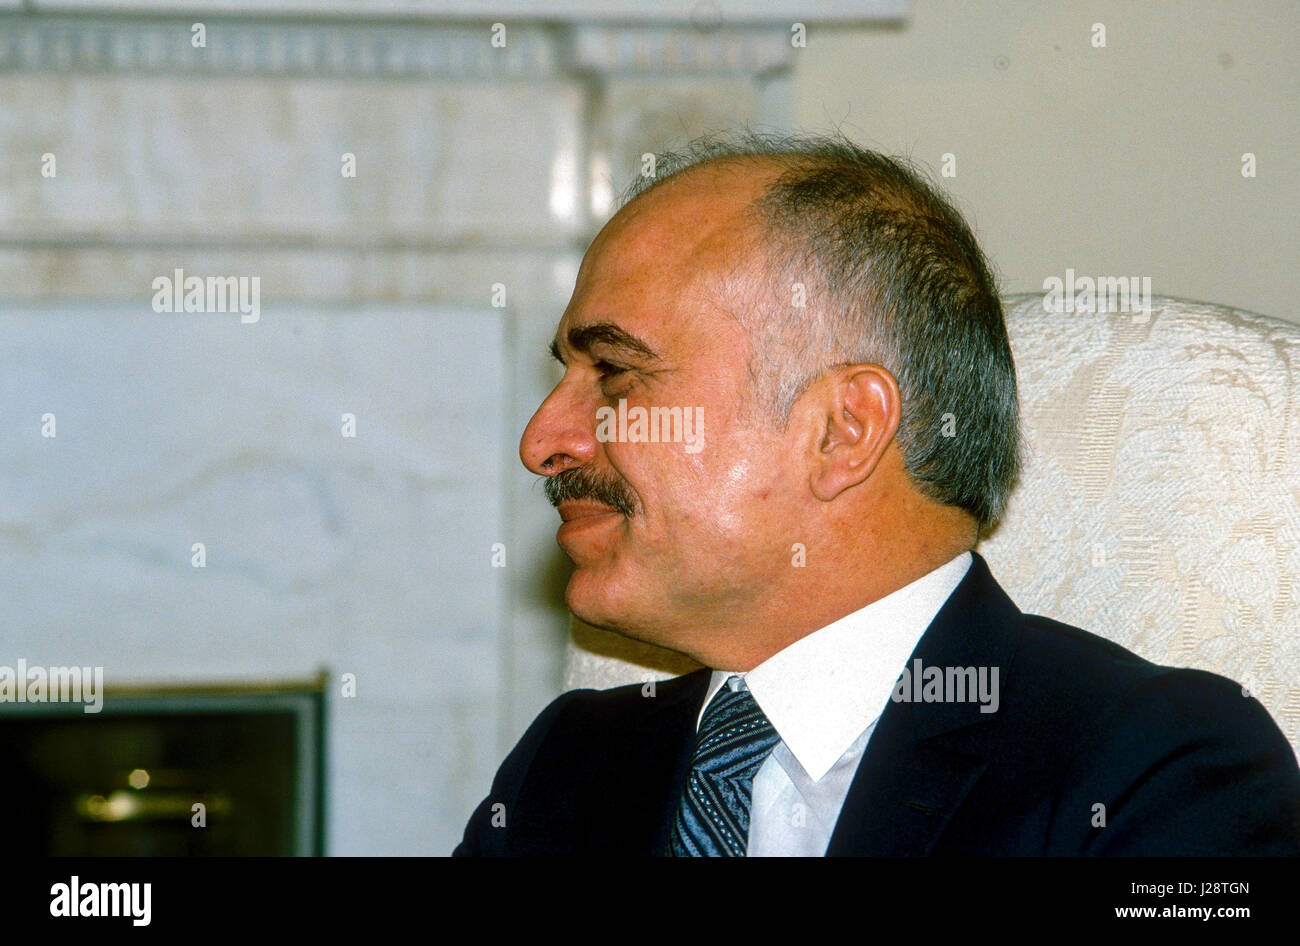 Le roi Hussein bin Talal de Jordanie est assis dans le bureau ovale de la Maison blanche au cours d'une séance de photo avec le président Ronald Reagan de Washington, DC., 13 février 1984. Photo par Mark Reinstein Banque D'Images